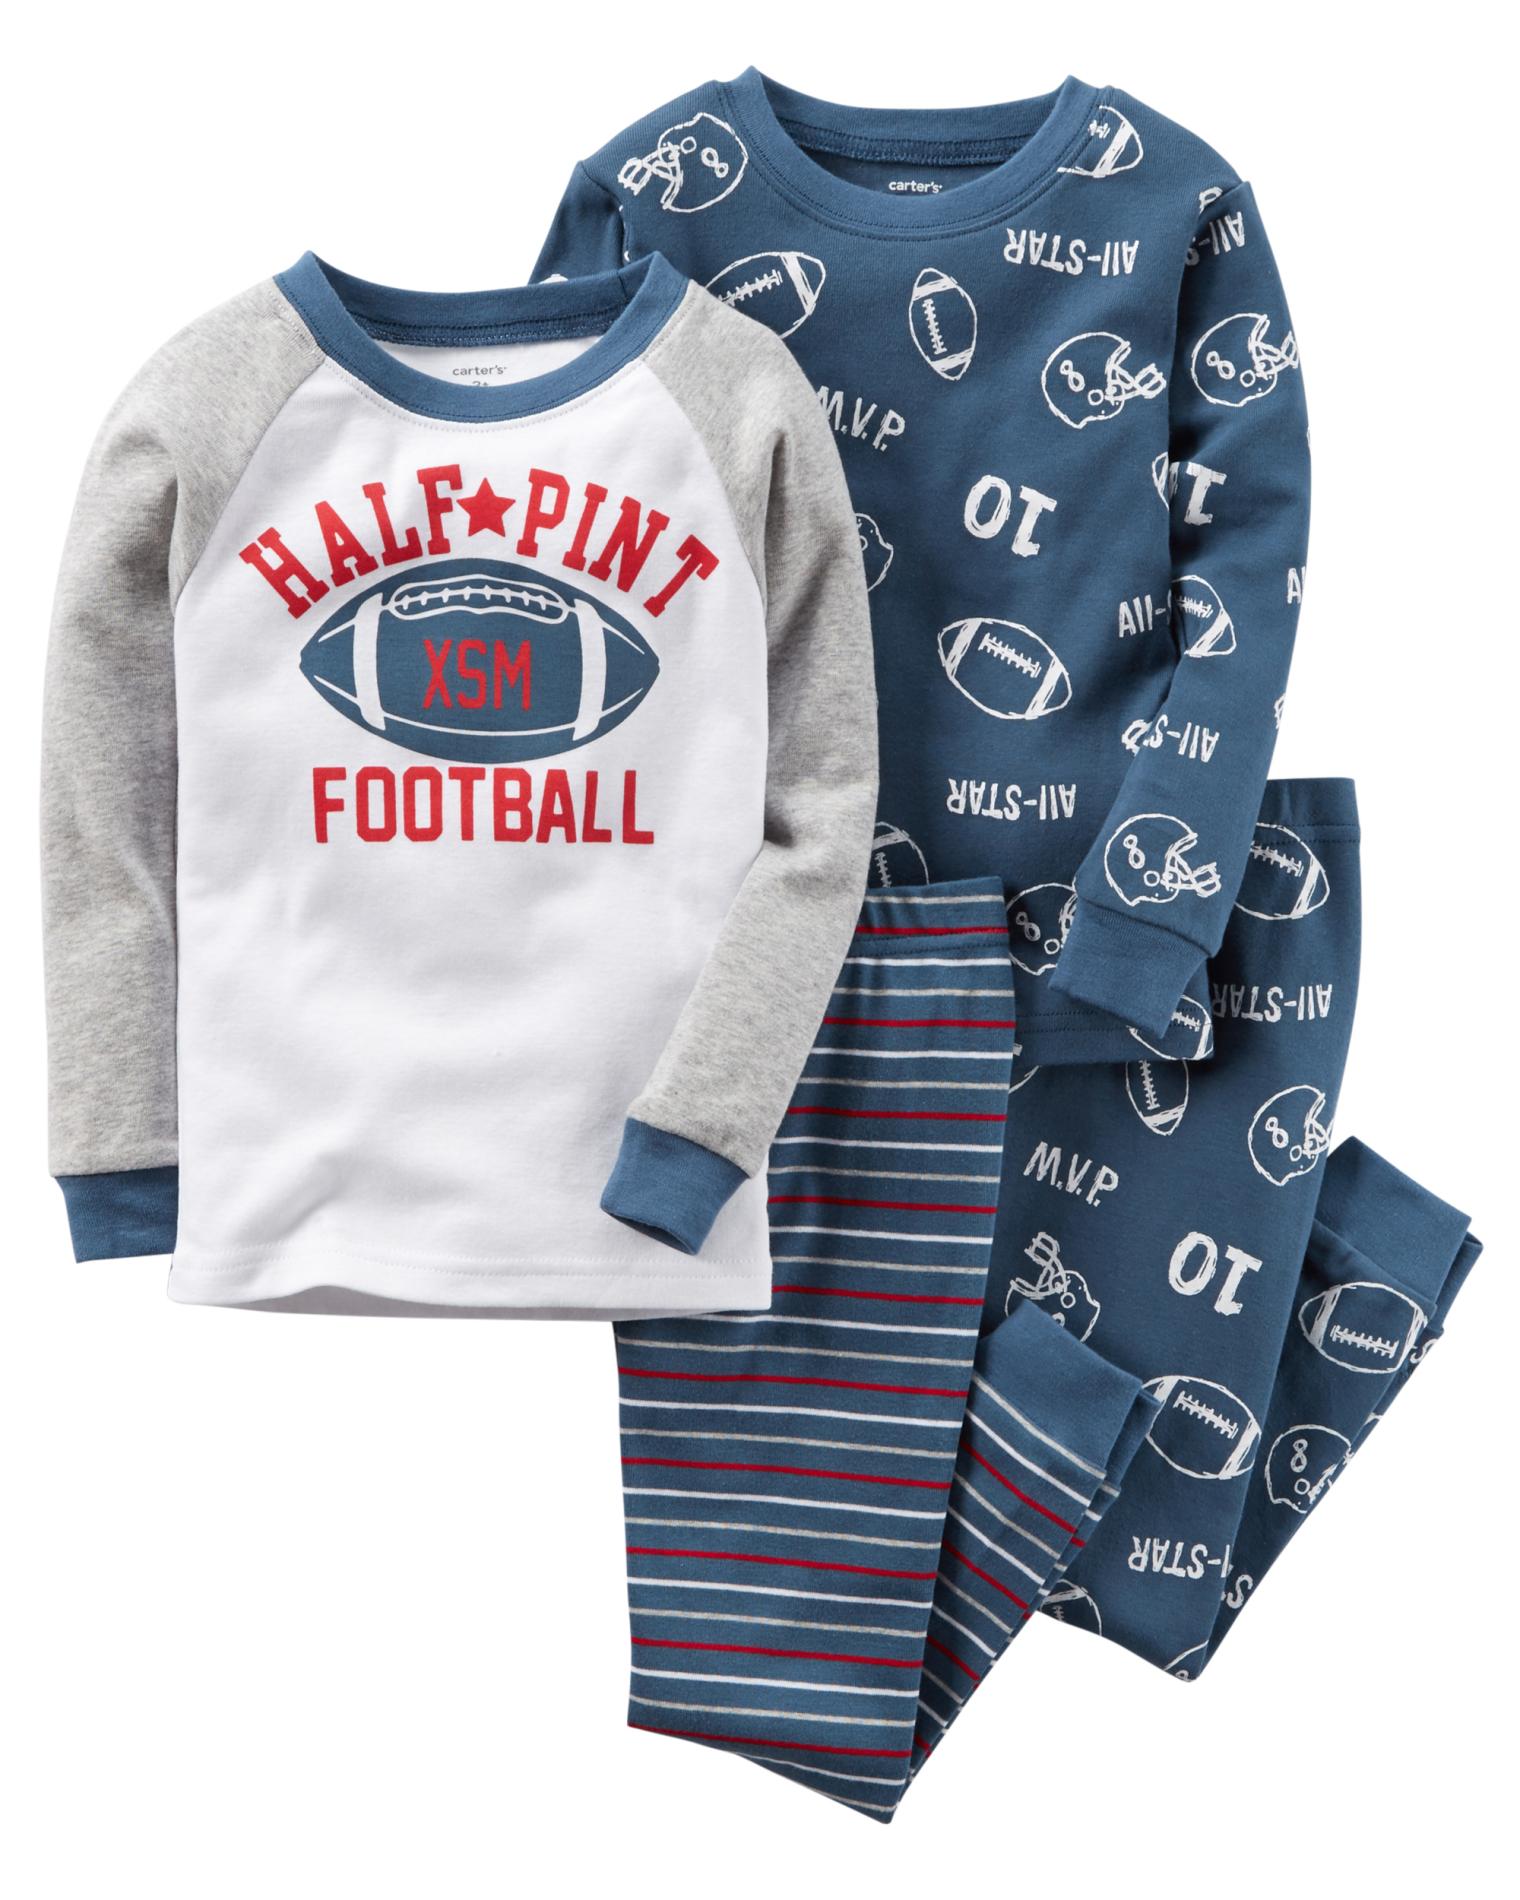 Carter's Infant & Toddler Boys' 2-Pairs Pajamas - Half-Pint Football